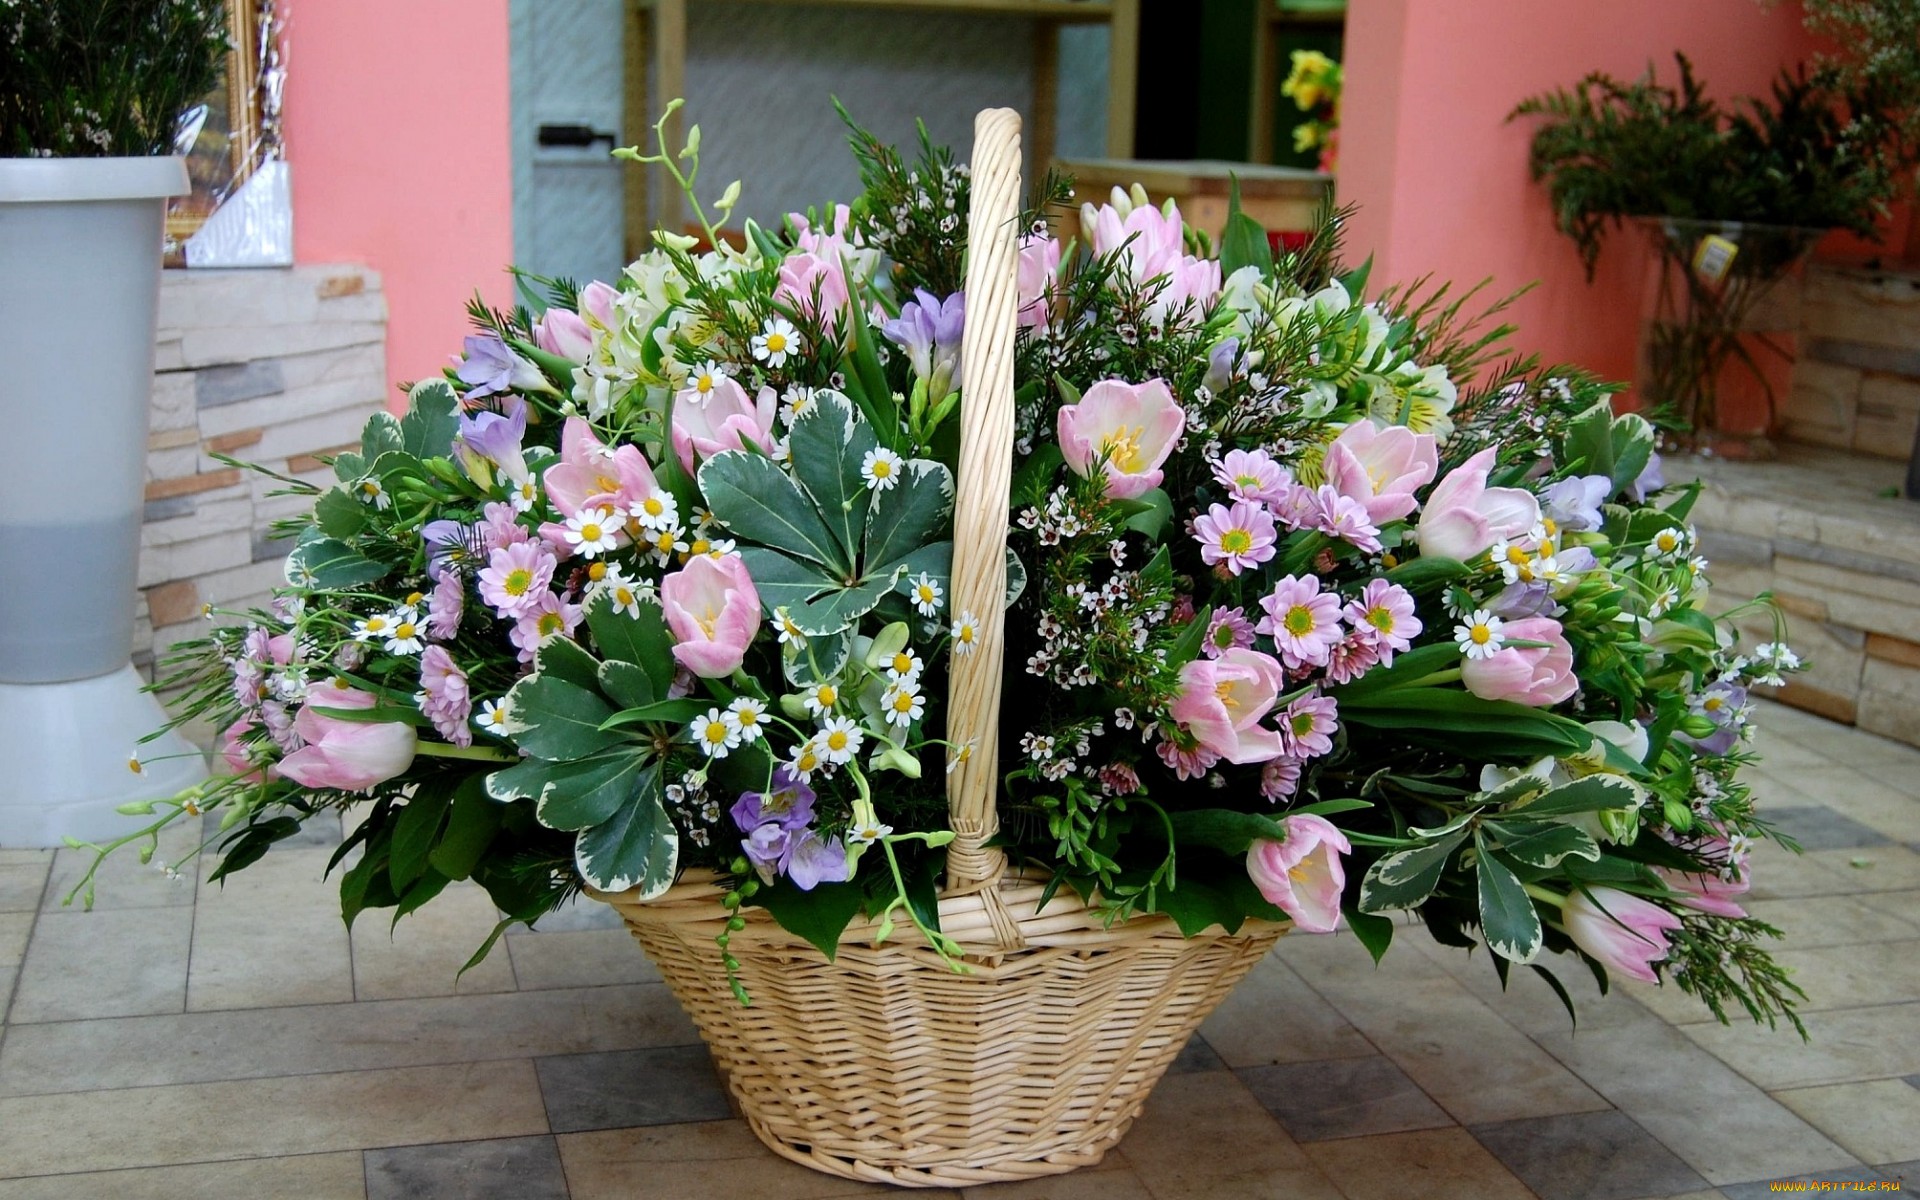 Фото купленной корзины с цветами